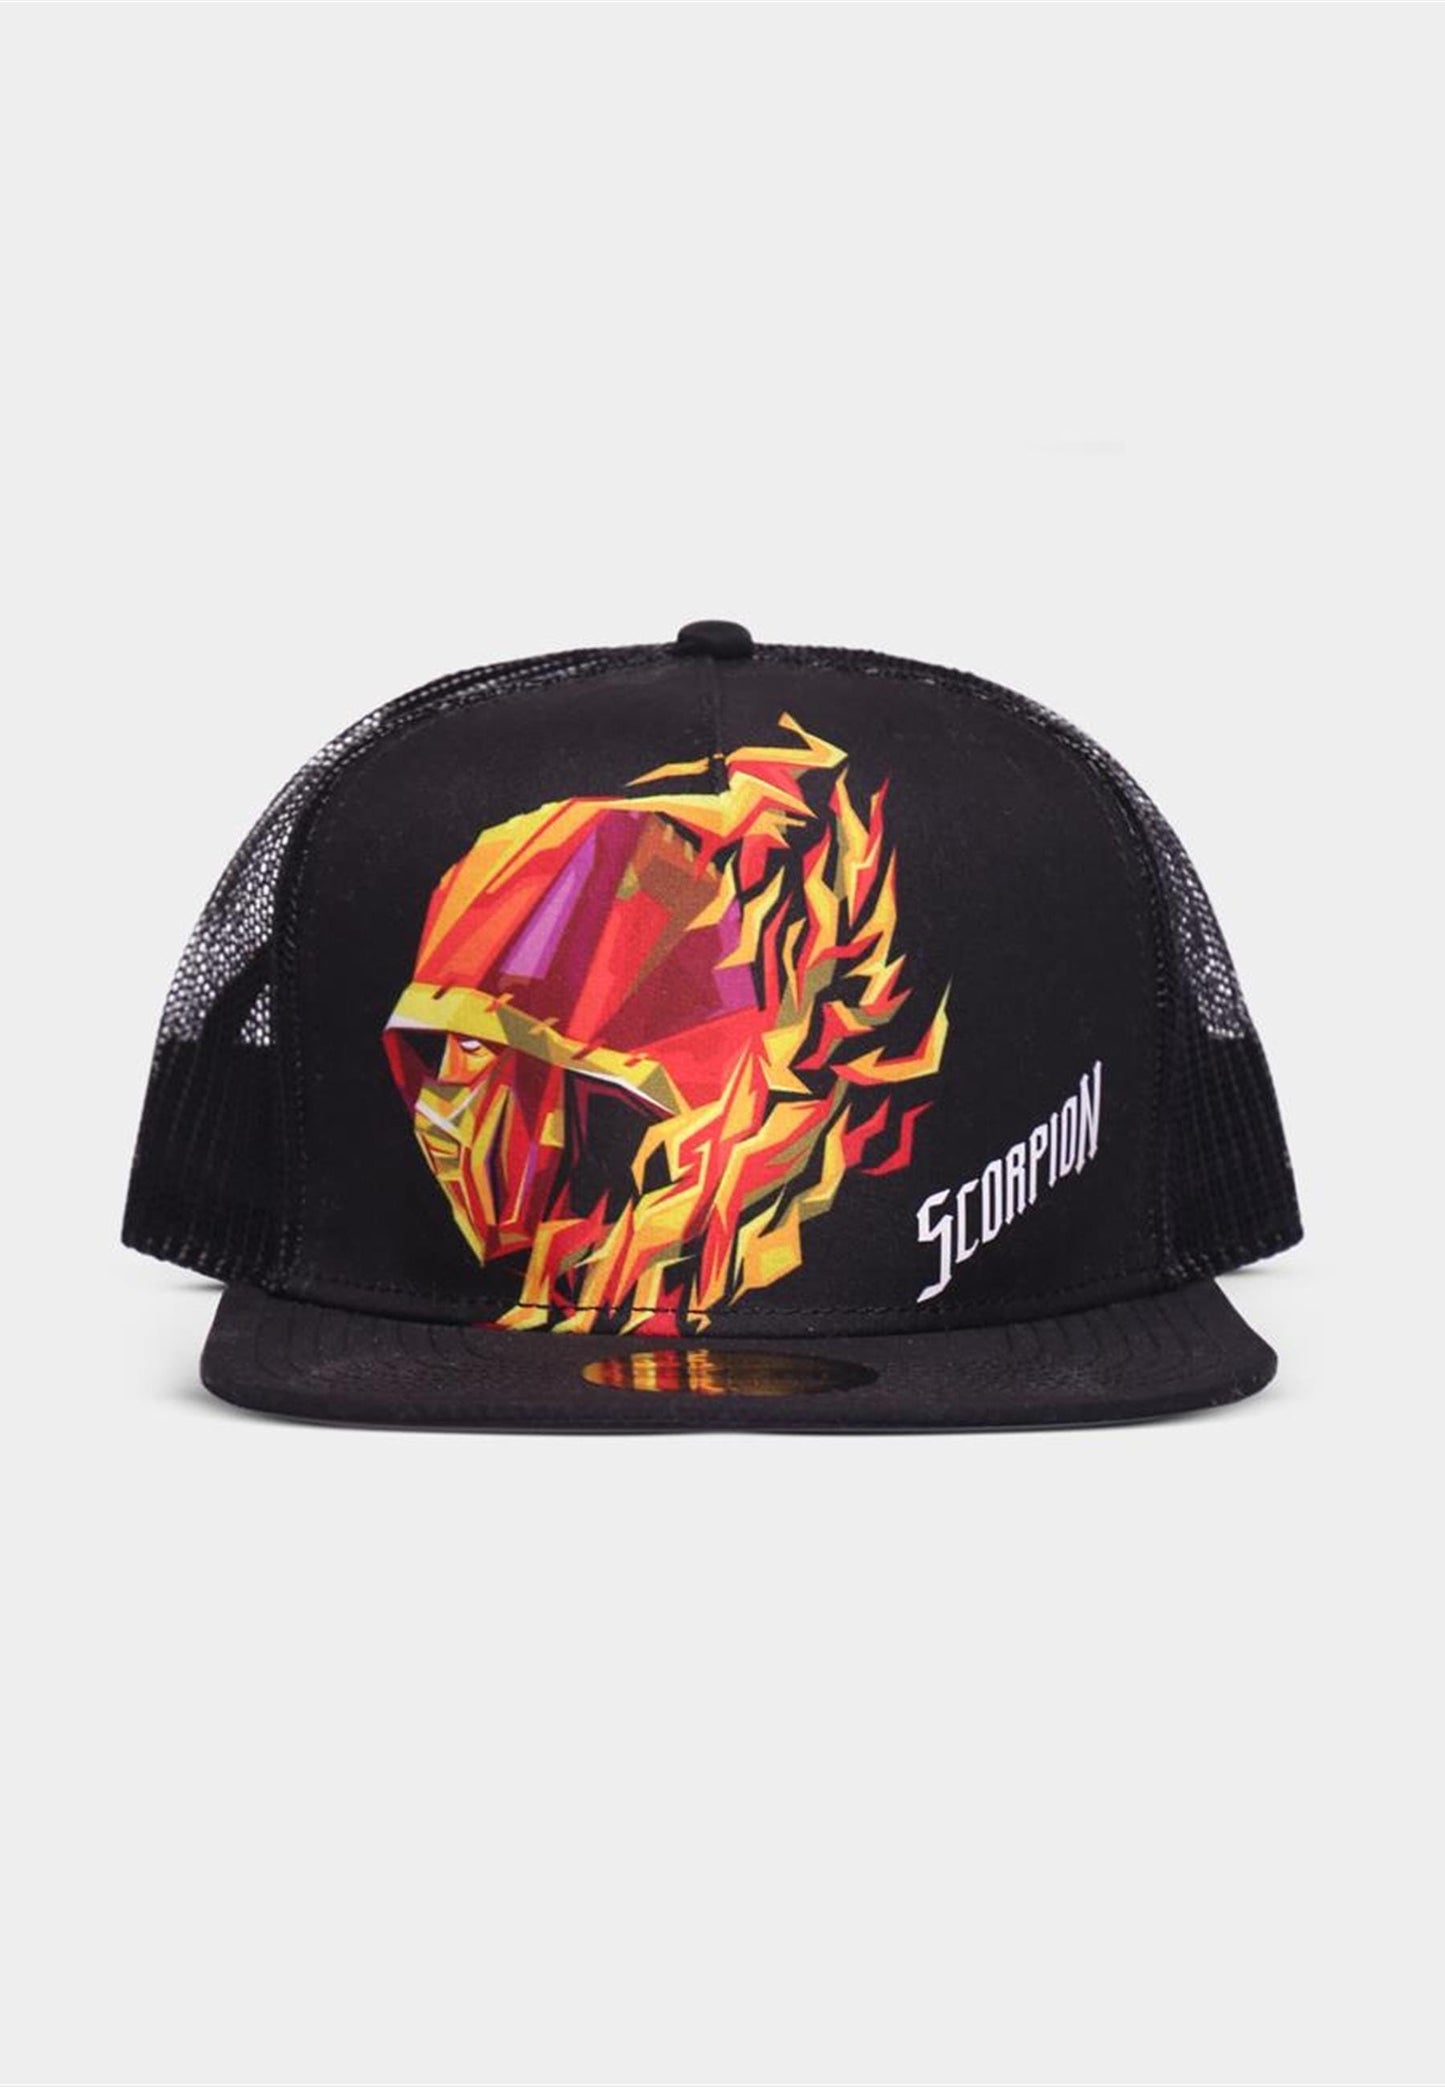 Mortal Kombat - Scorpion Snapback Cap